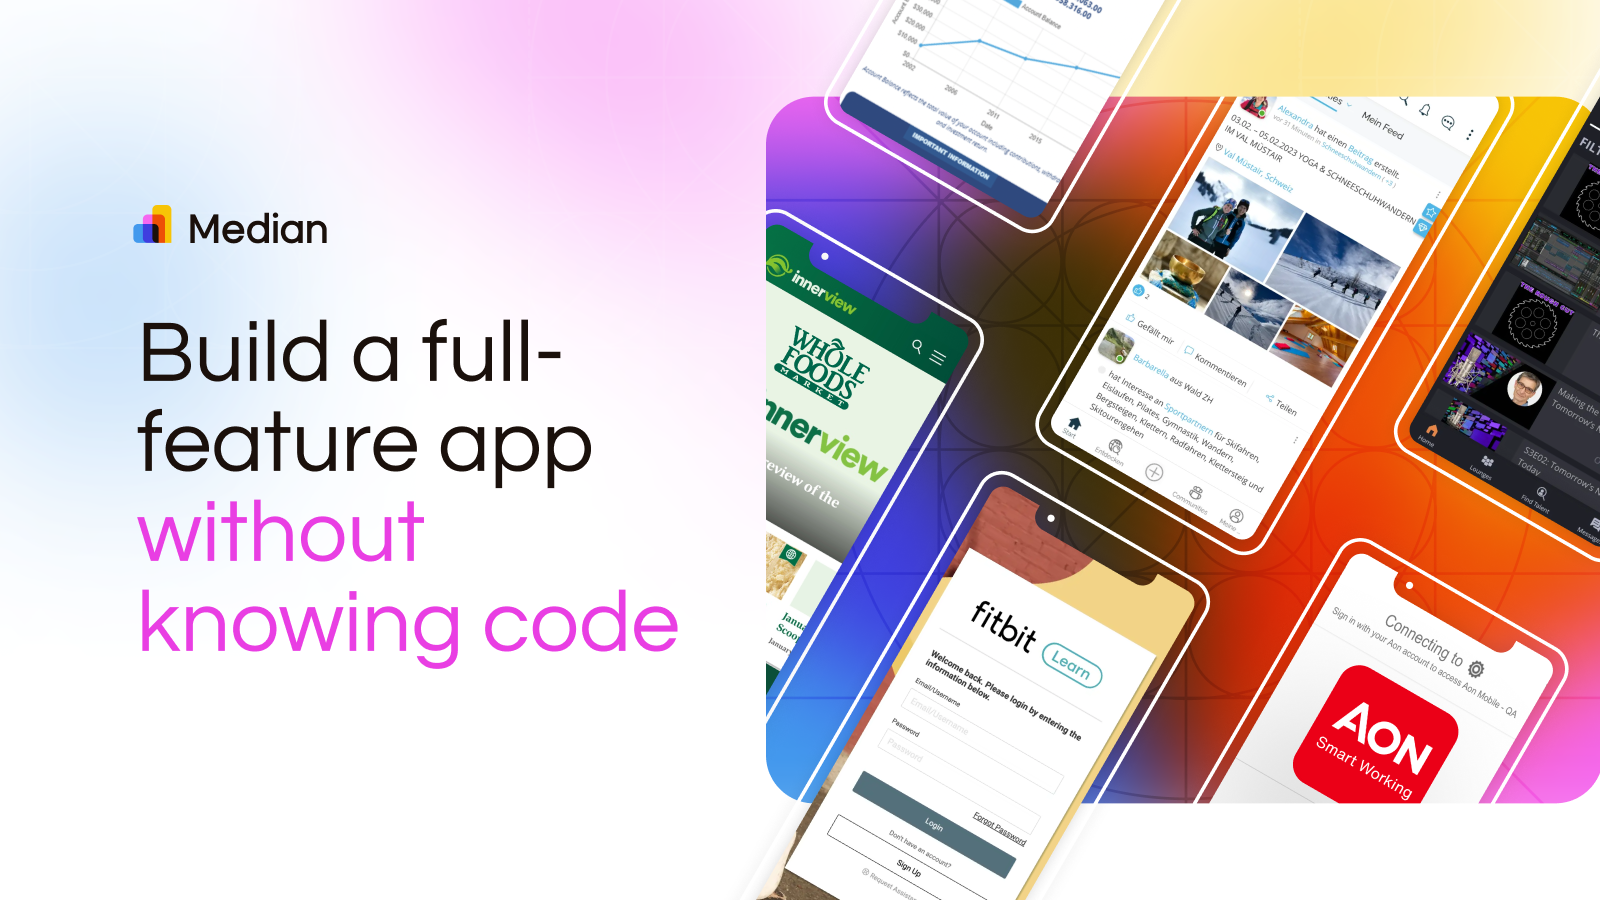 Använd Median.co för att bygga en fullfjädrad app utan att känna till kod